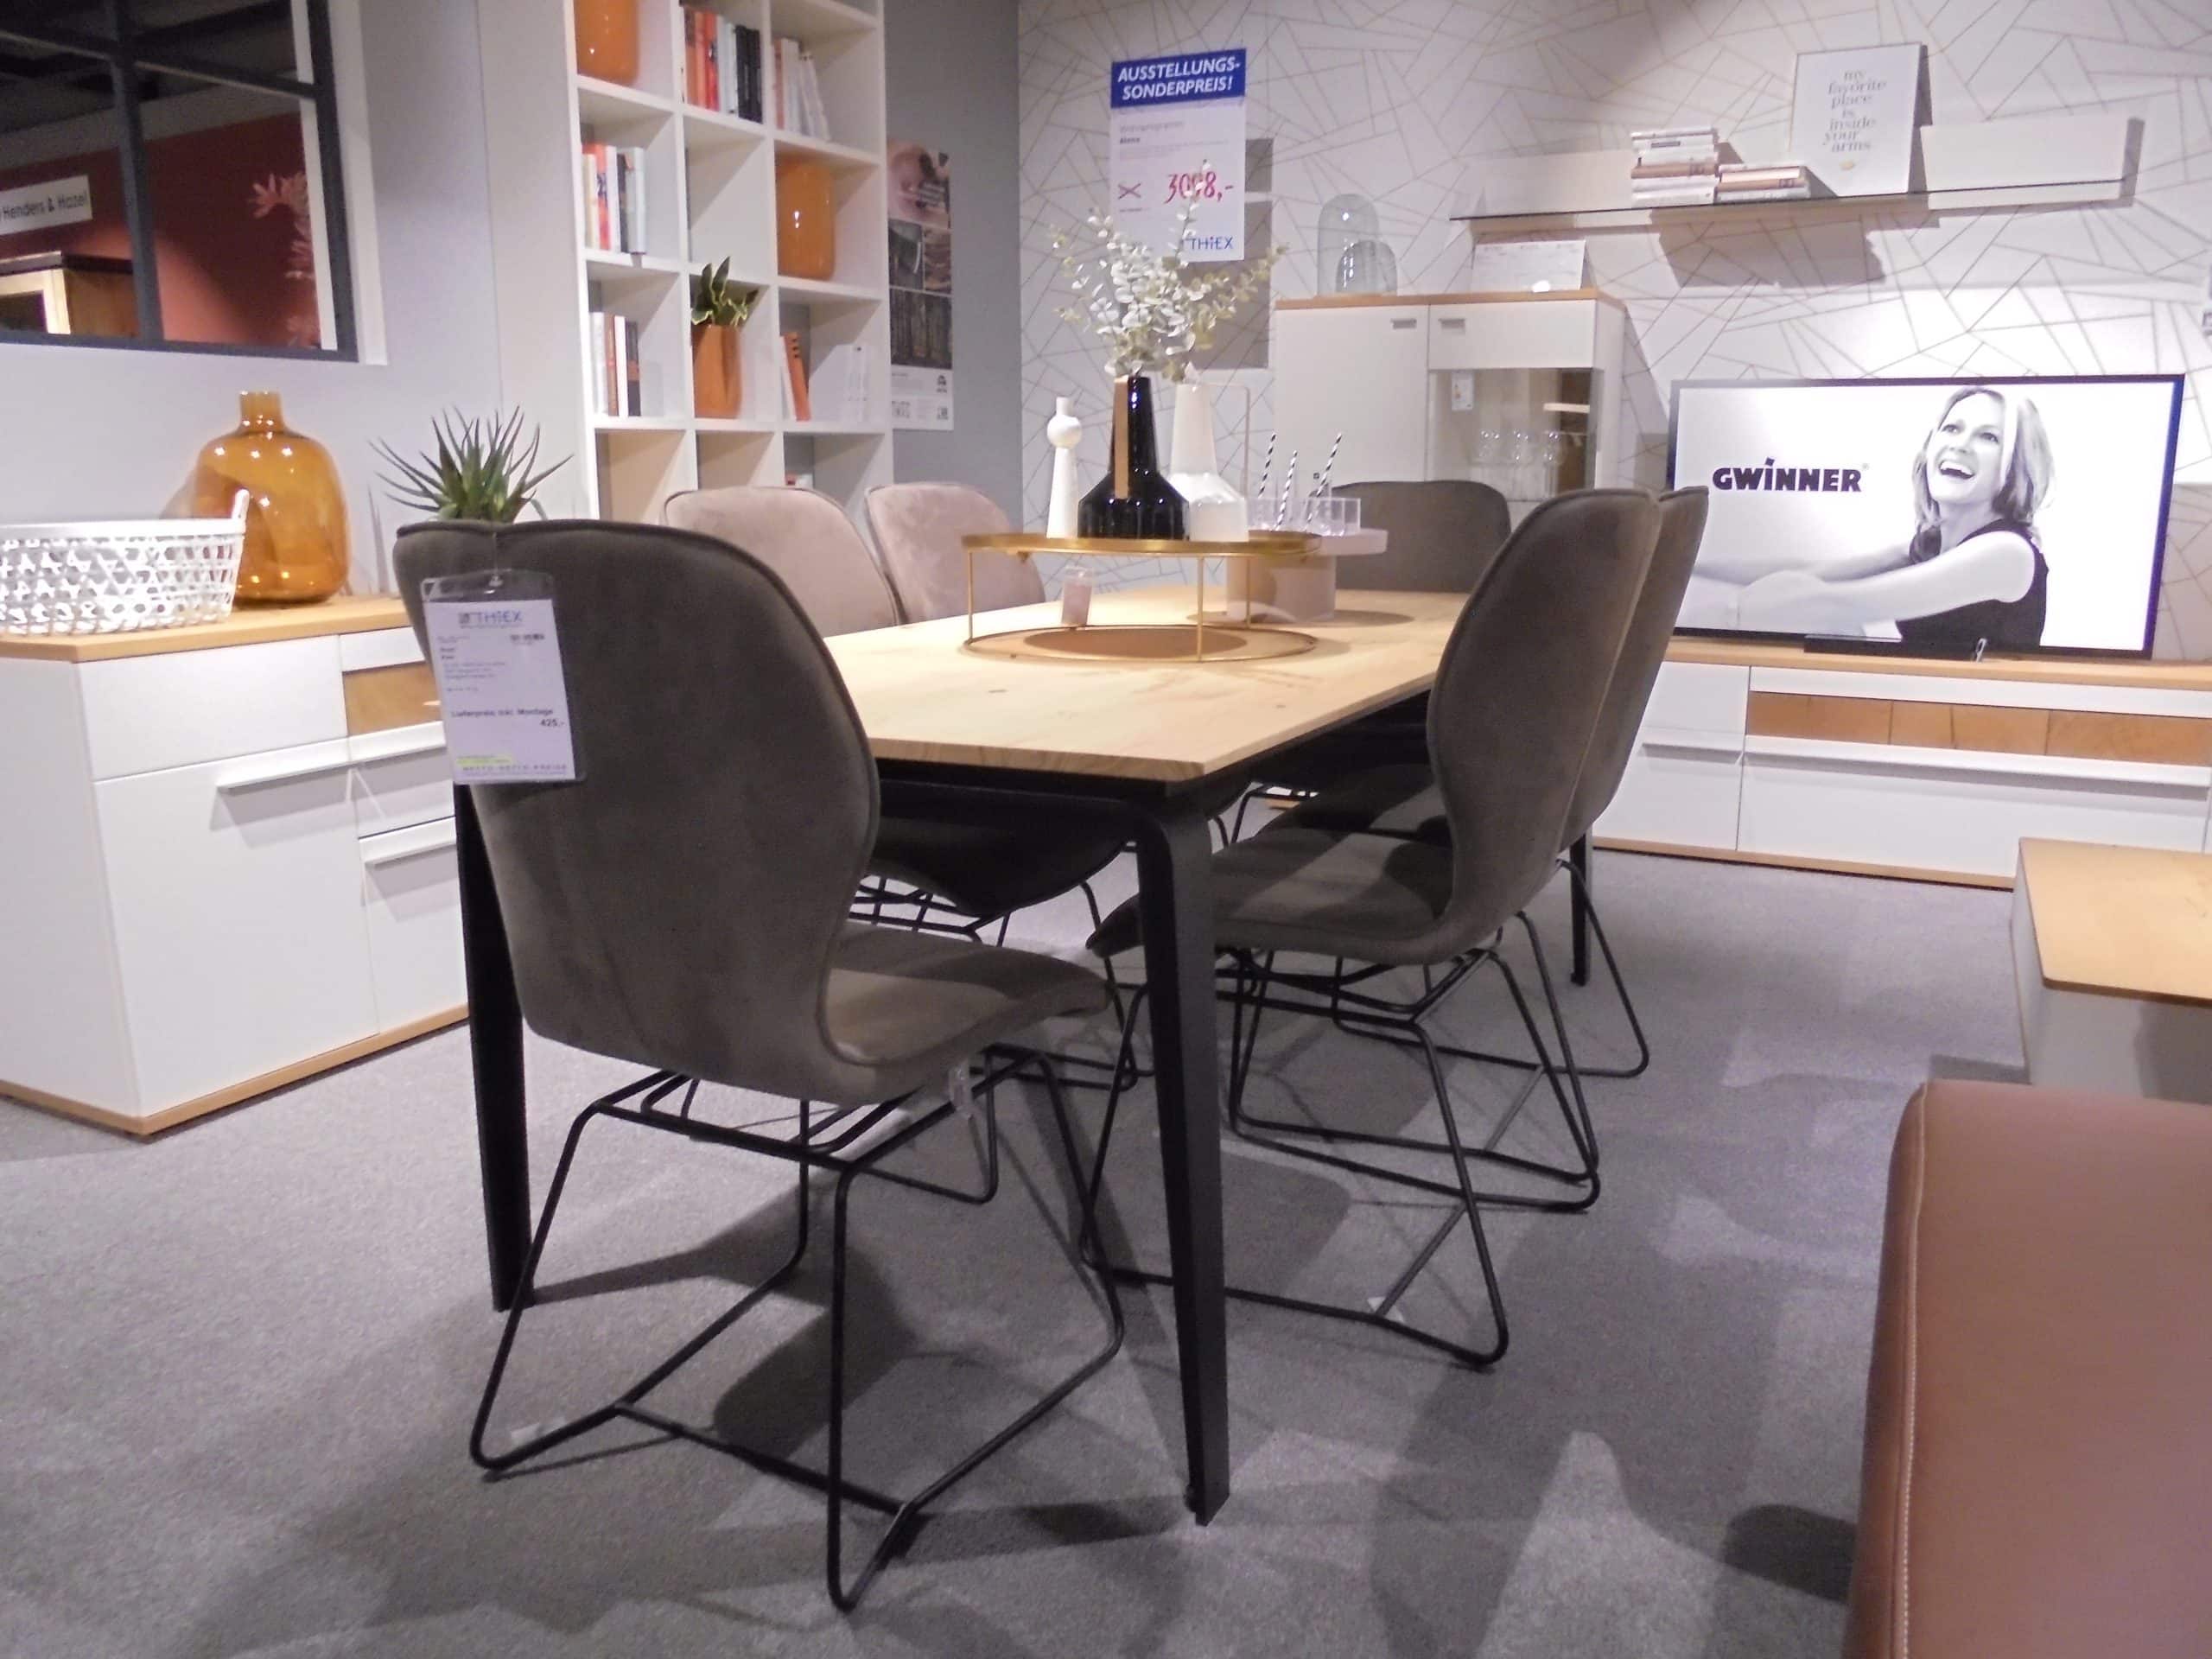 Tischgruppe ET524/Kaia bestehend aus Esstisch 95 x 200 cm mit Kopfauszug 100 cm und 6 Stühlen mit Stoffbezug bei Möbelhaus Thiex im Abverkauf über 30 % reduziert.